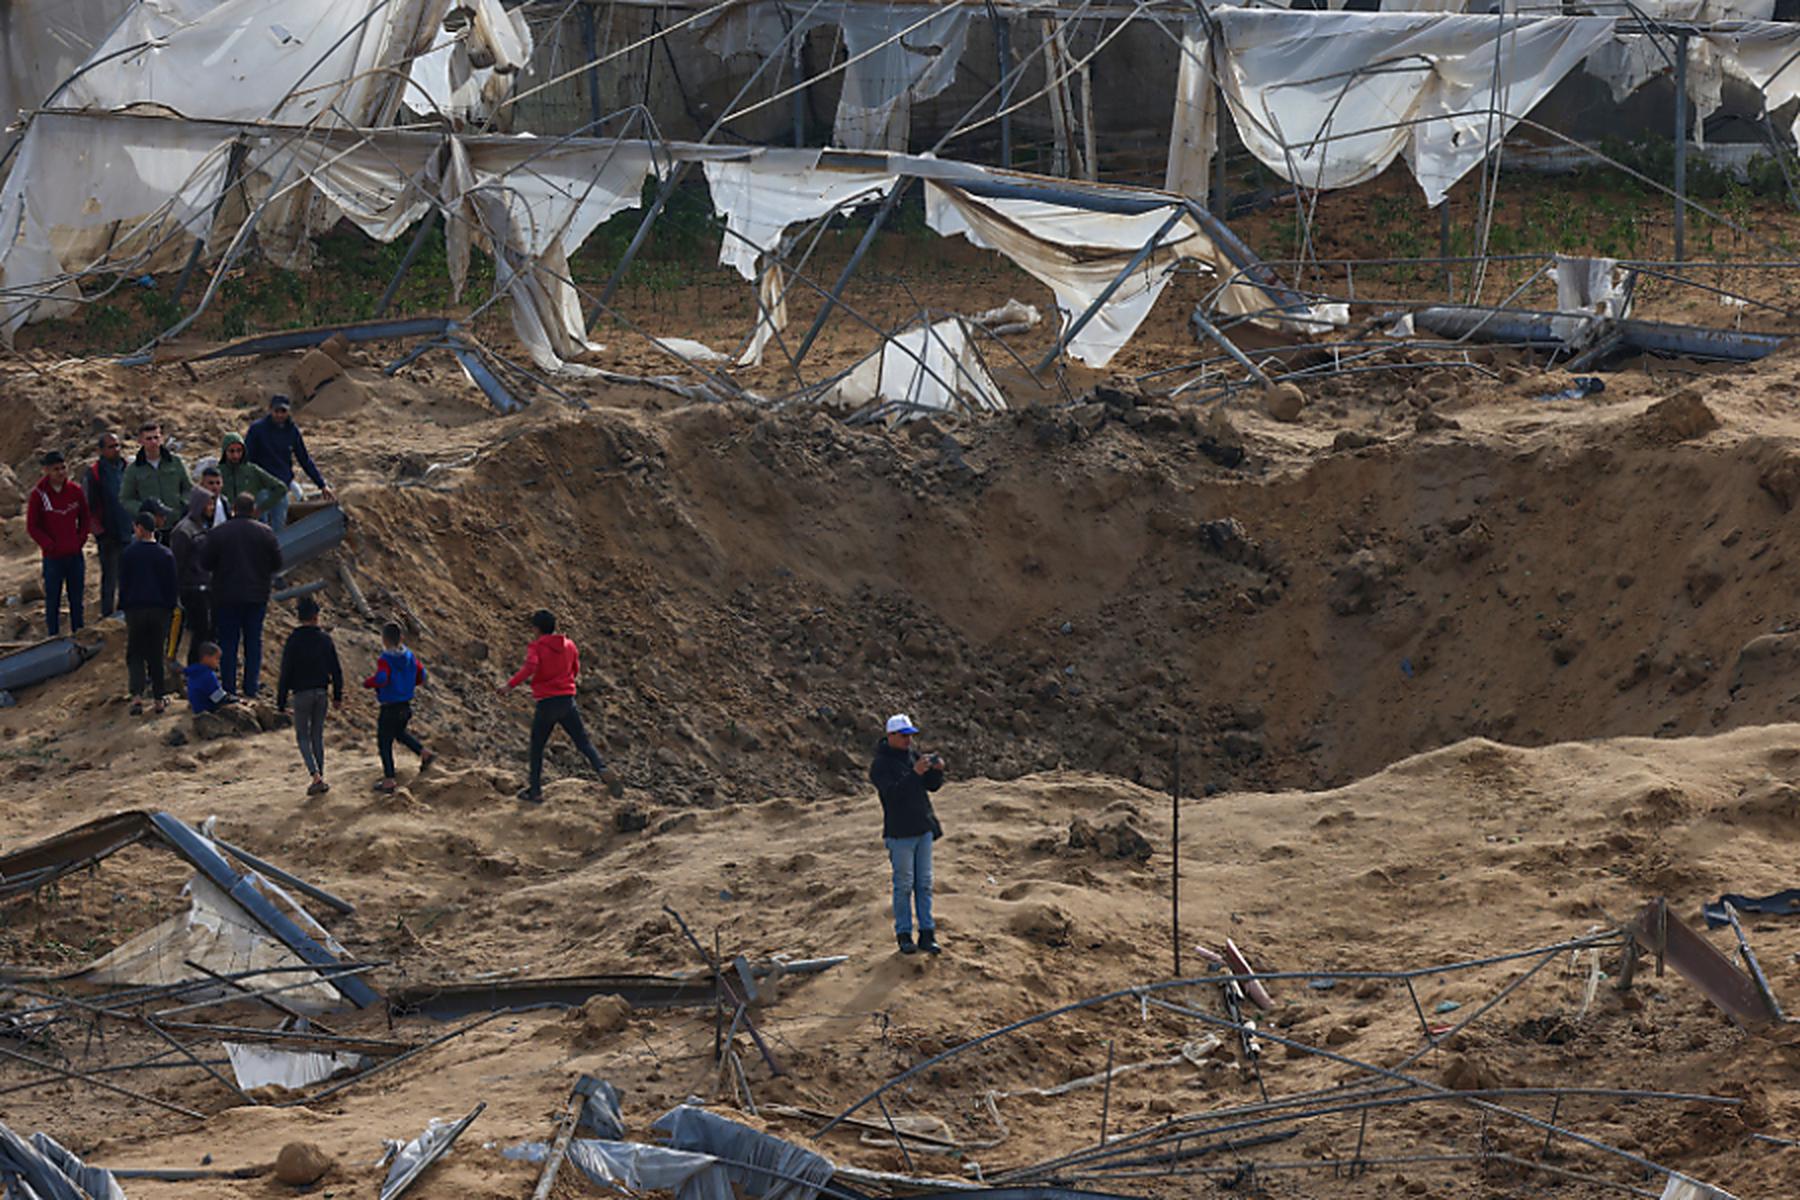 humanitäre katastrophe droht | israel will vor attacke zeltstädte für rafah-bevölkerung